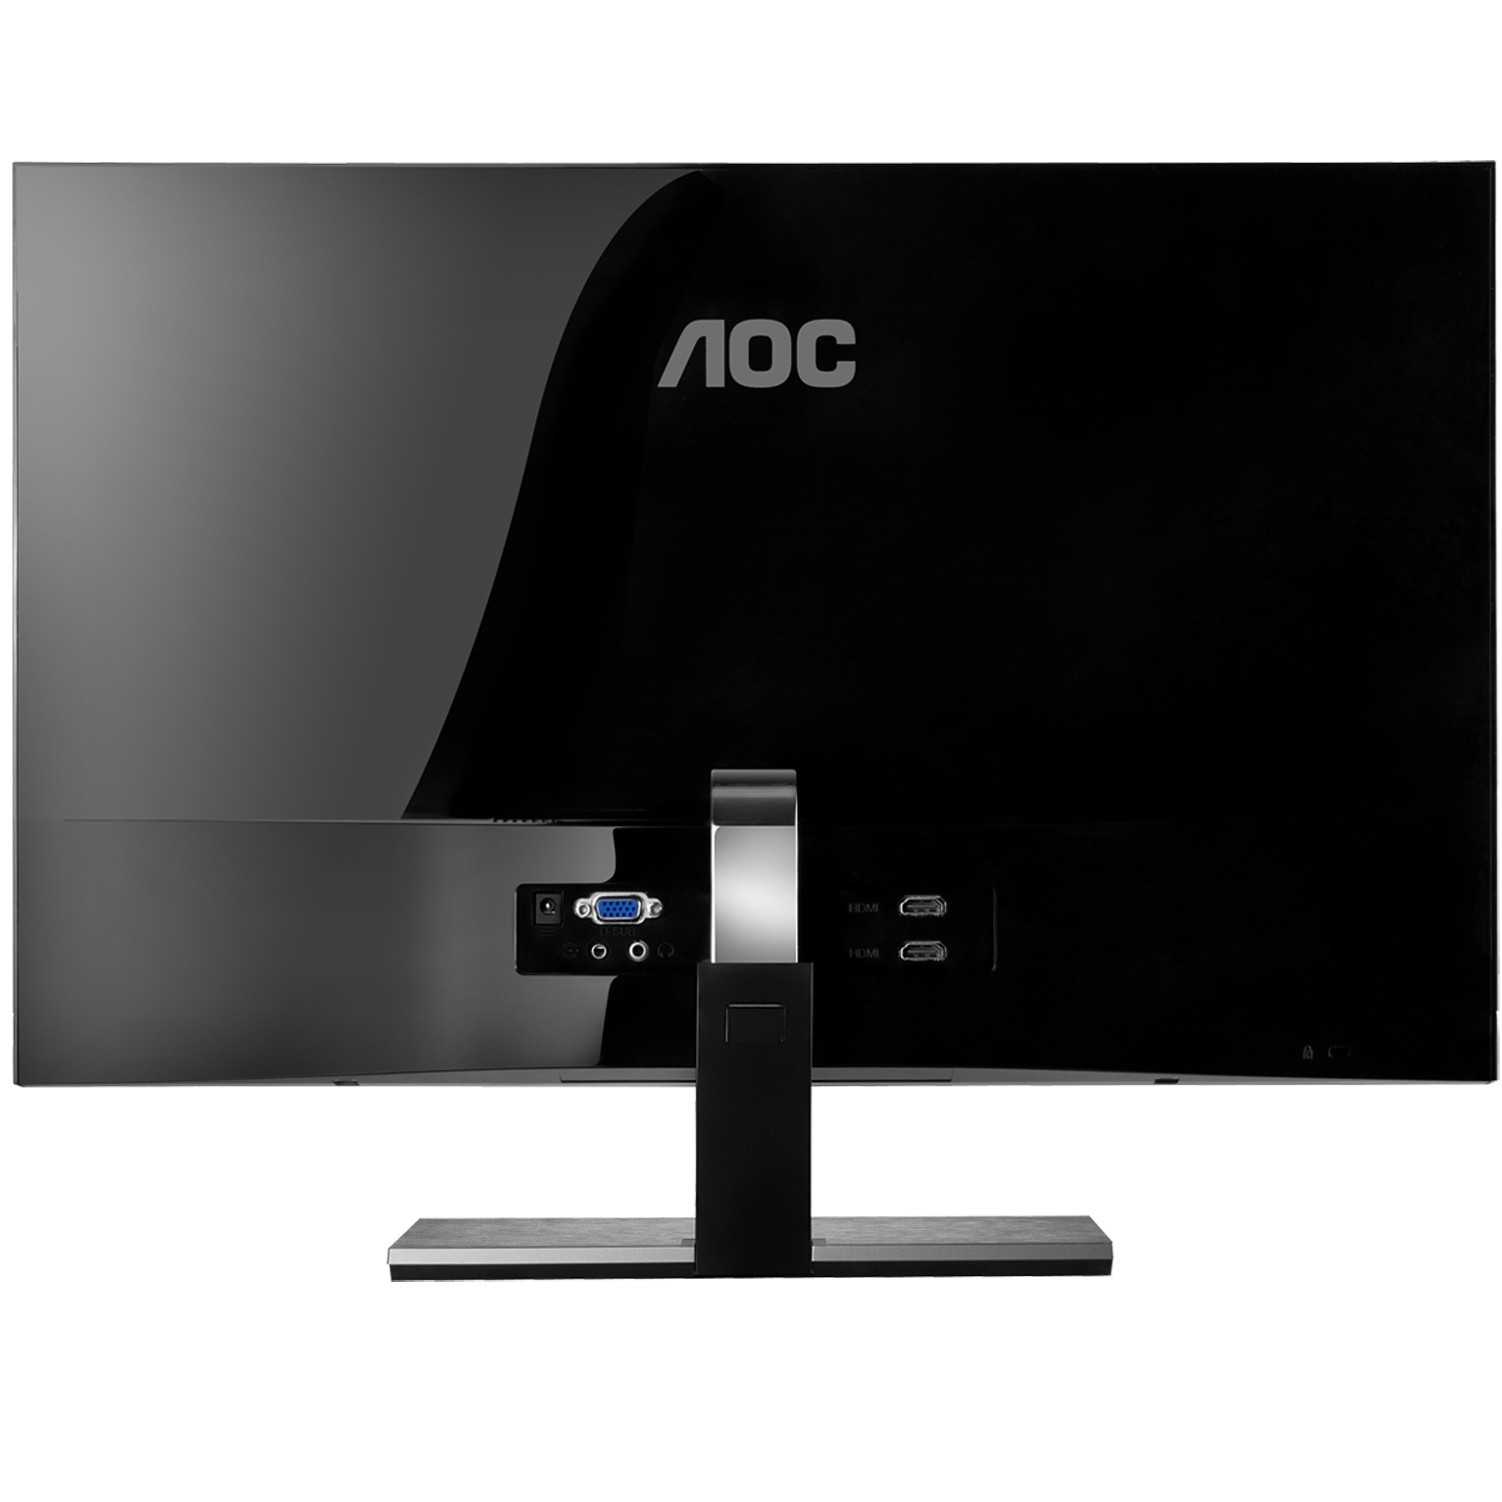 Монитор aoc i2757fm (серебристый) купить от 15180 руб в воронеже, сравнить цены, отзывы, видео обзоры и характеристики